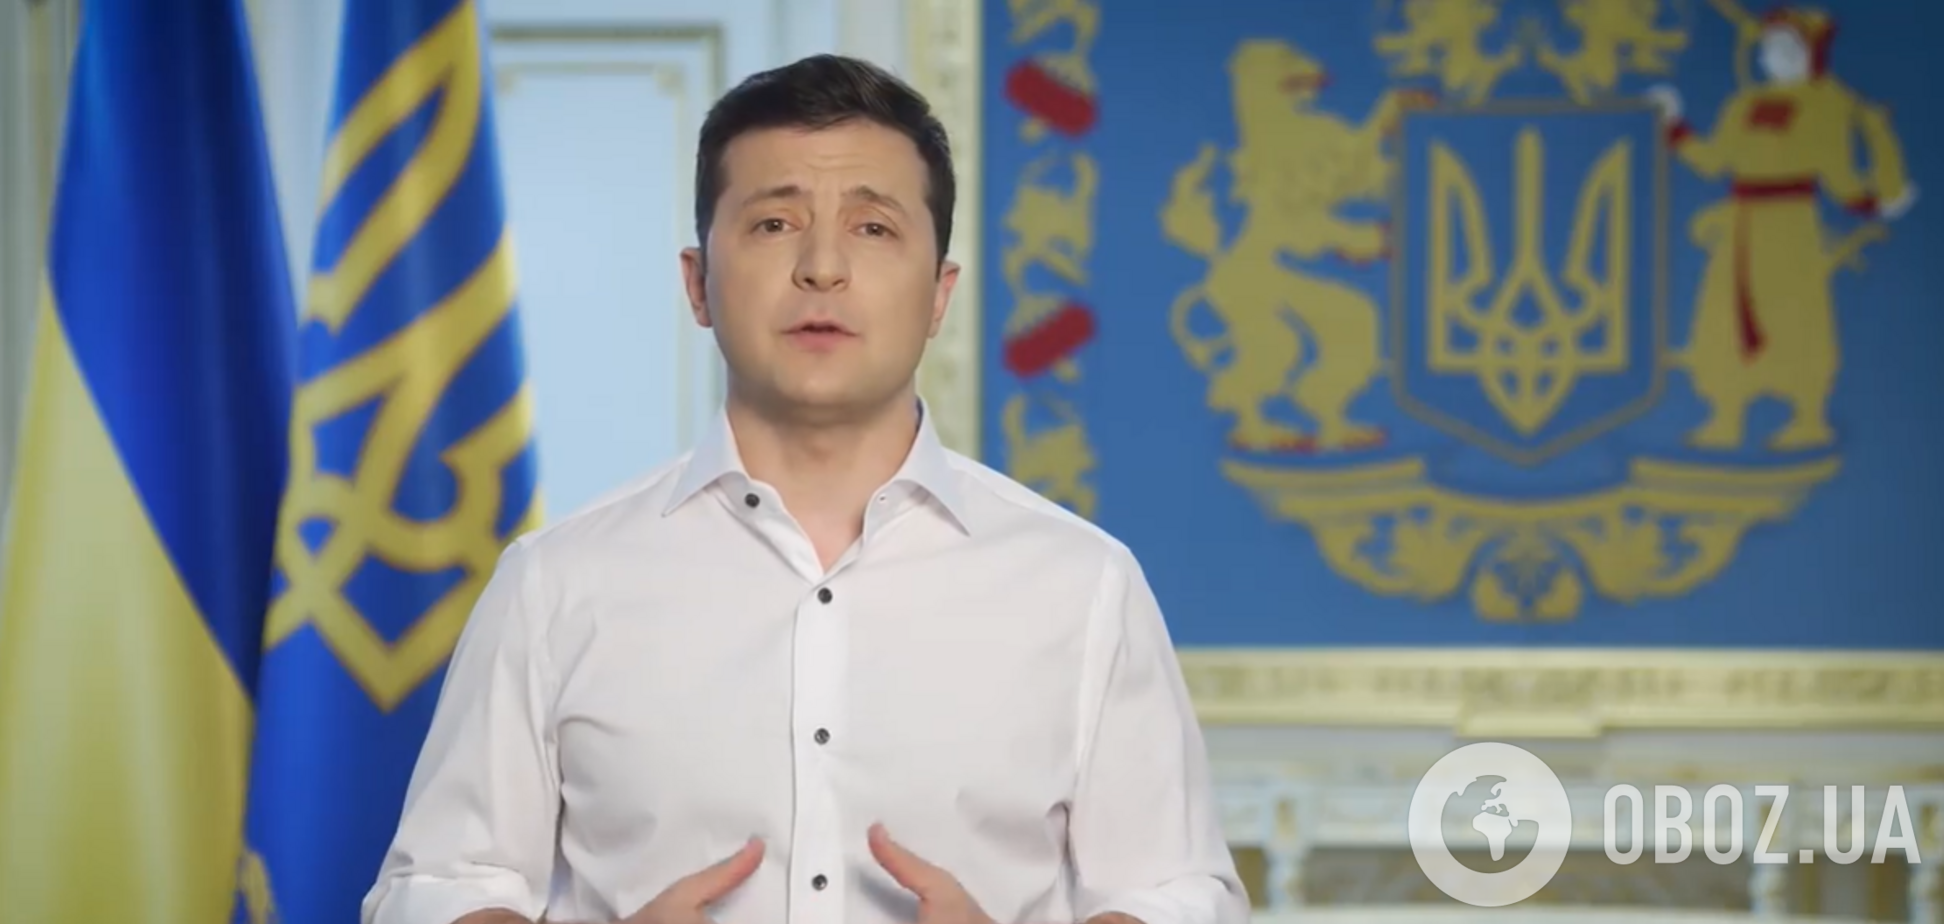 'Попереду вирішальний шторм': Зеленський виступив із заявою про завершення карантину в Україні